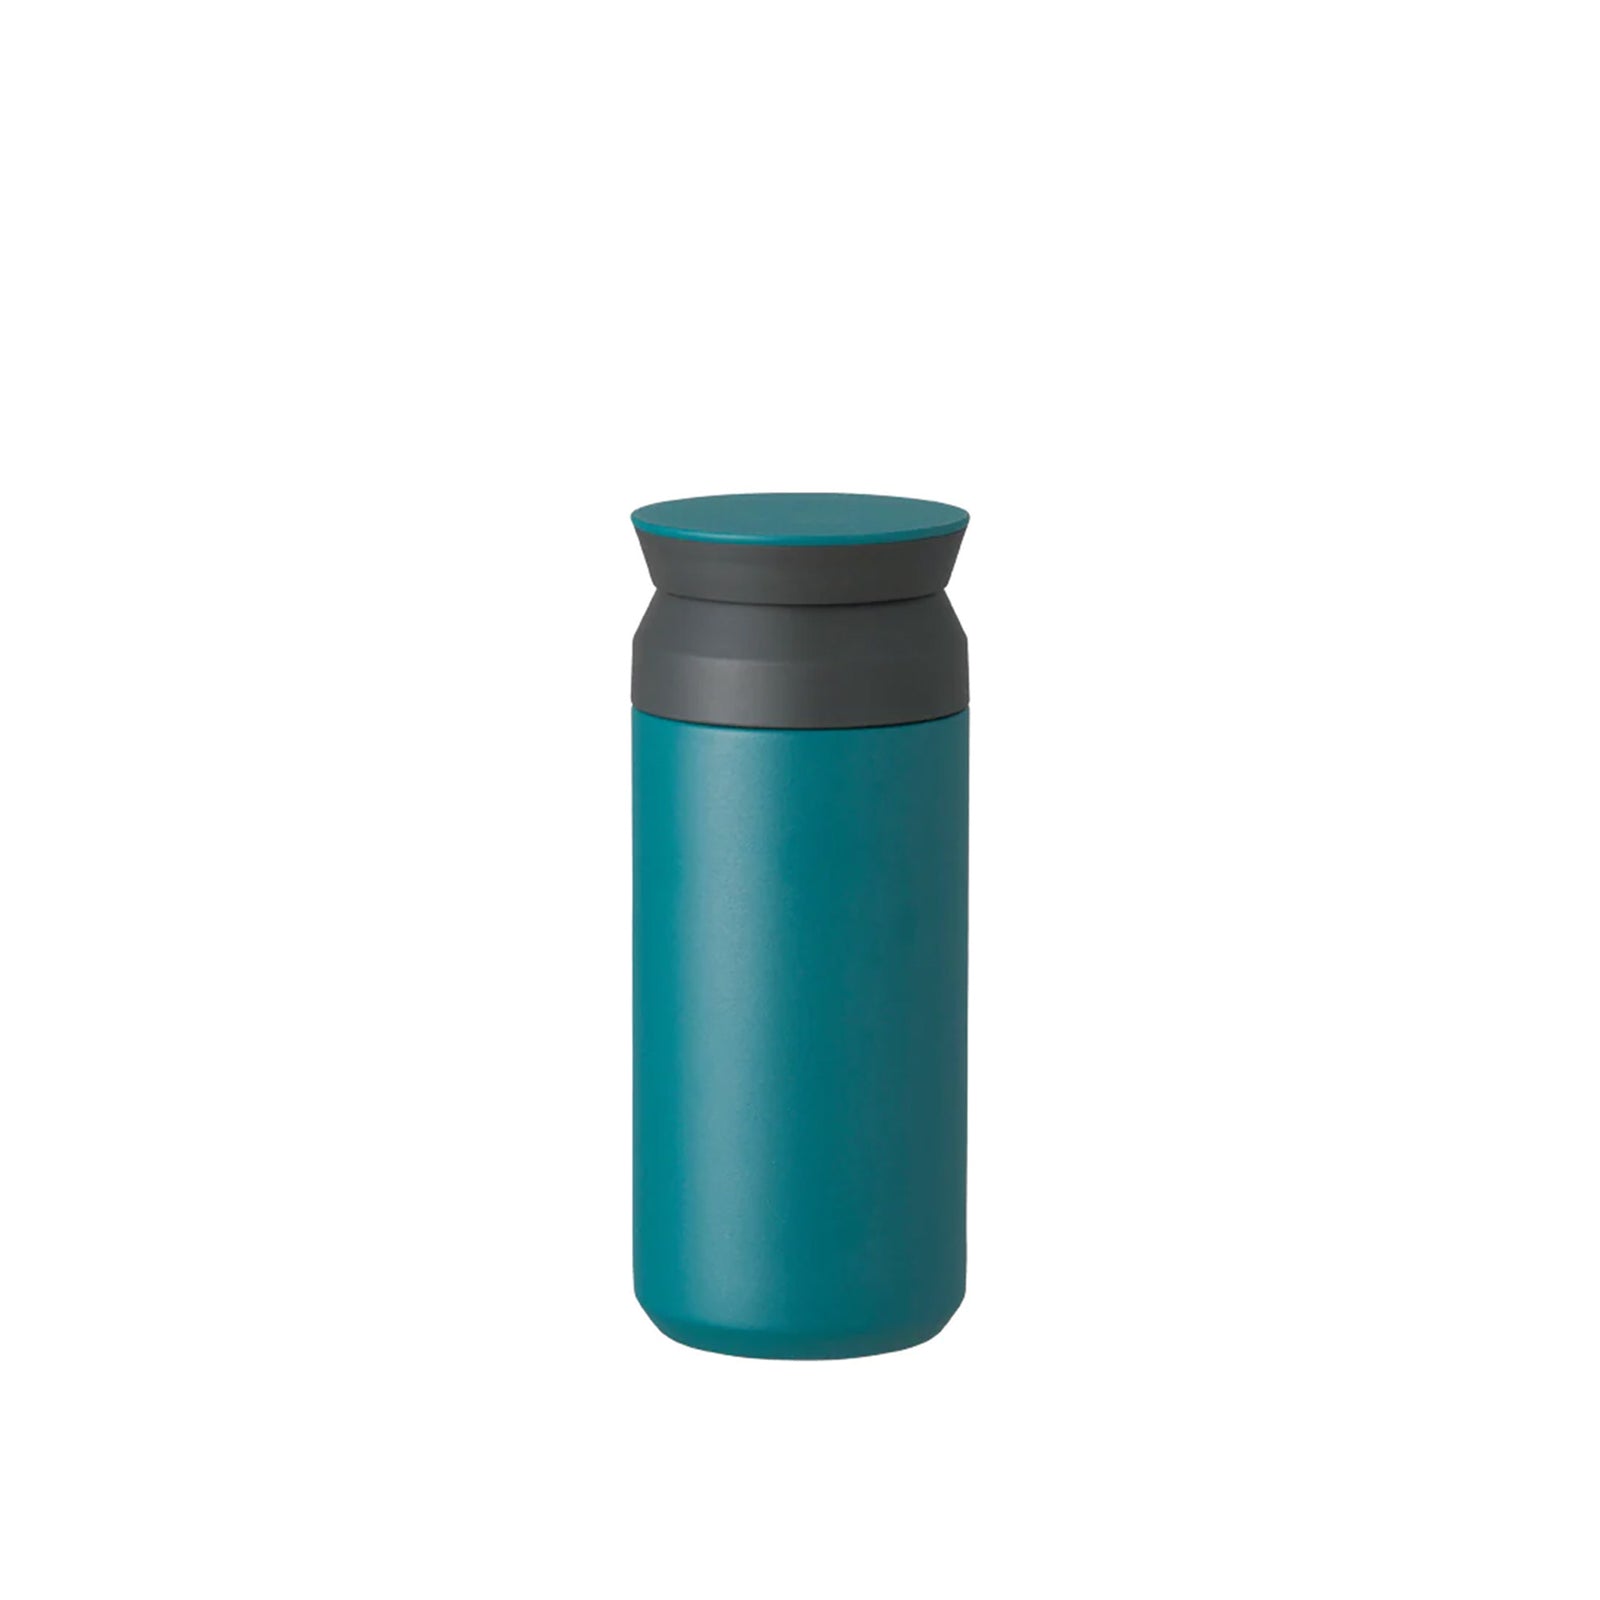 Thermos Travel Mug Hammertone Green 0,25L - Stanley - Espresso Gear